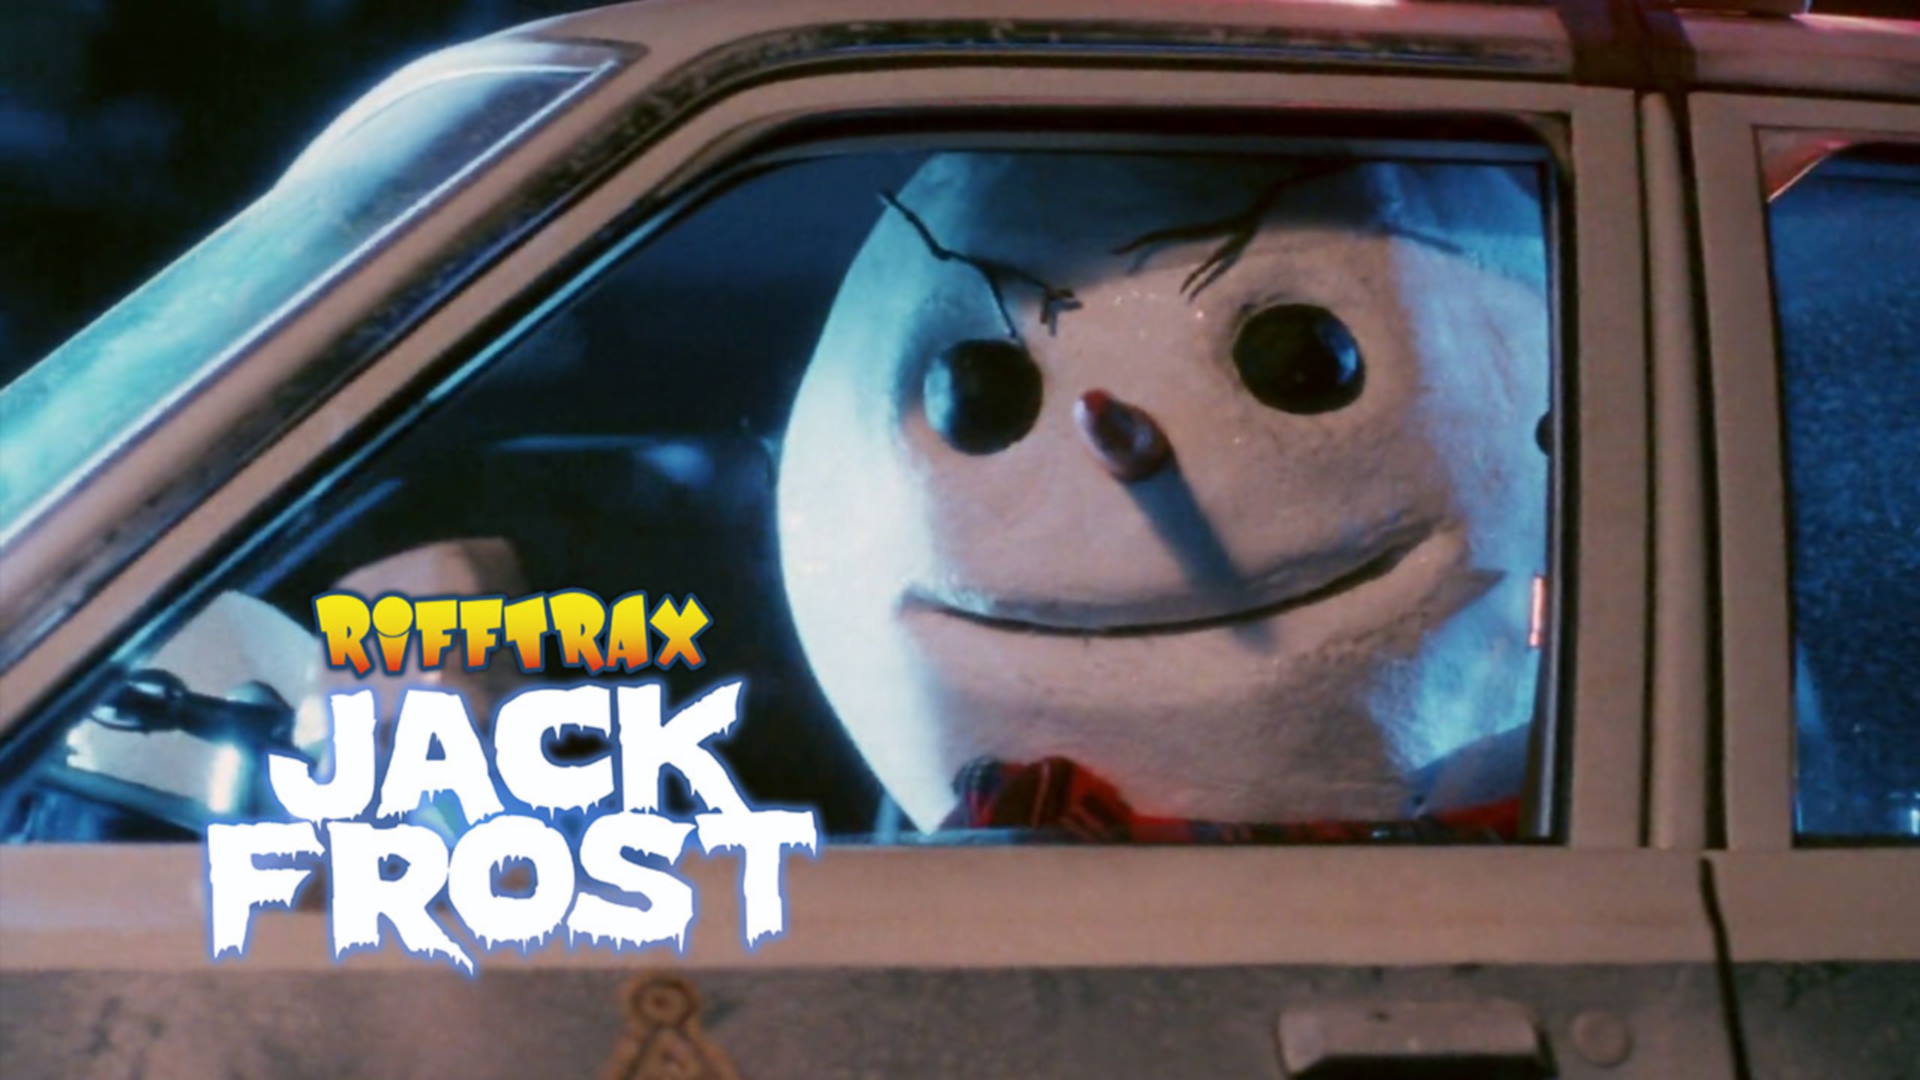 Rifftrax: Jack Frost